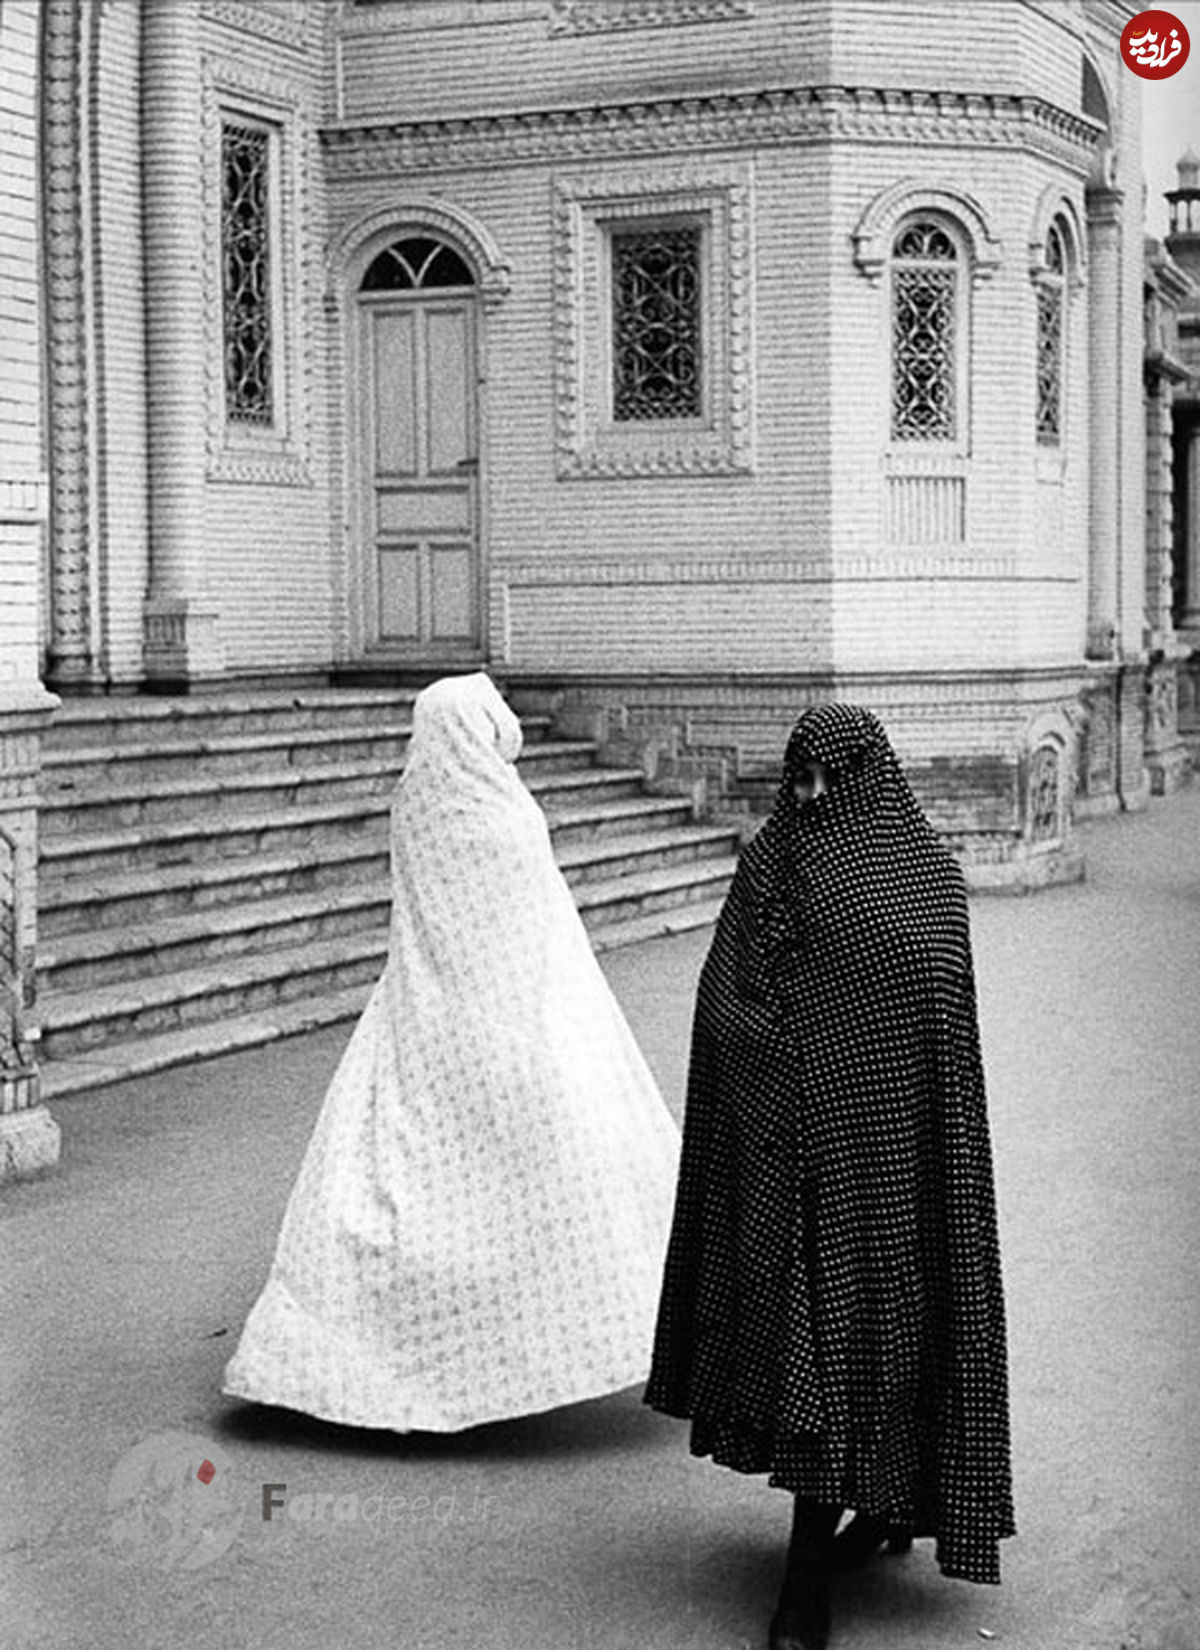 تصاویر/ آلبوم عکاس فرانسوی از سه مقطع تاریخ ایران